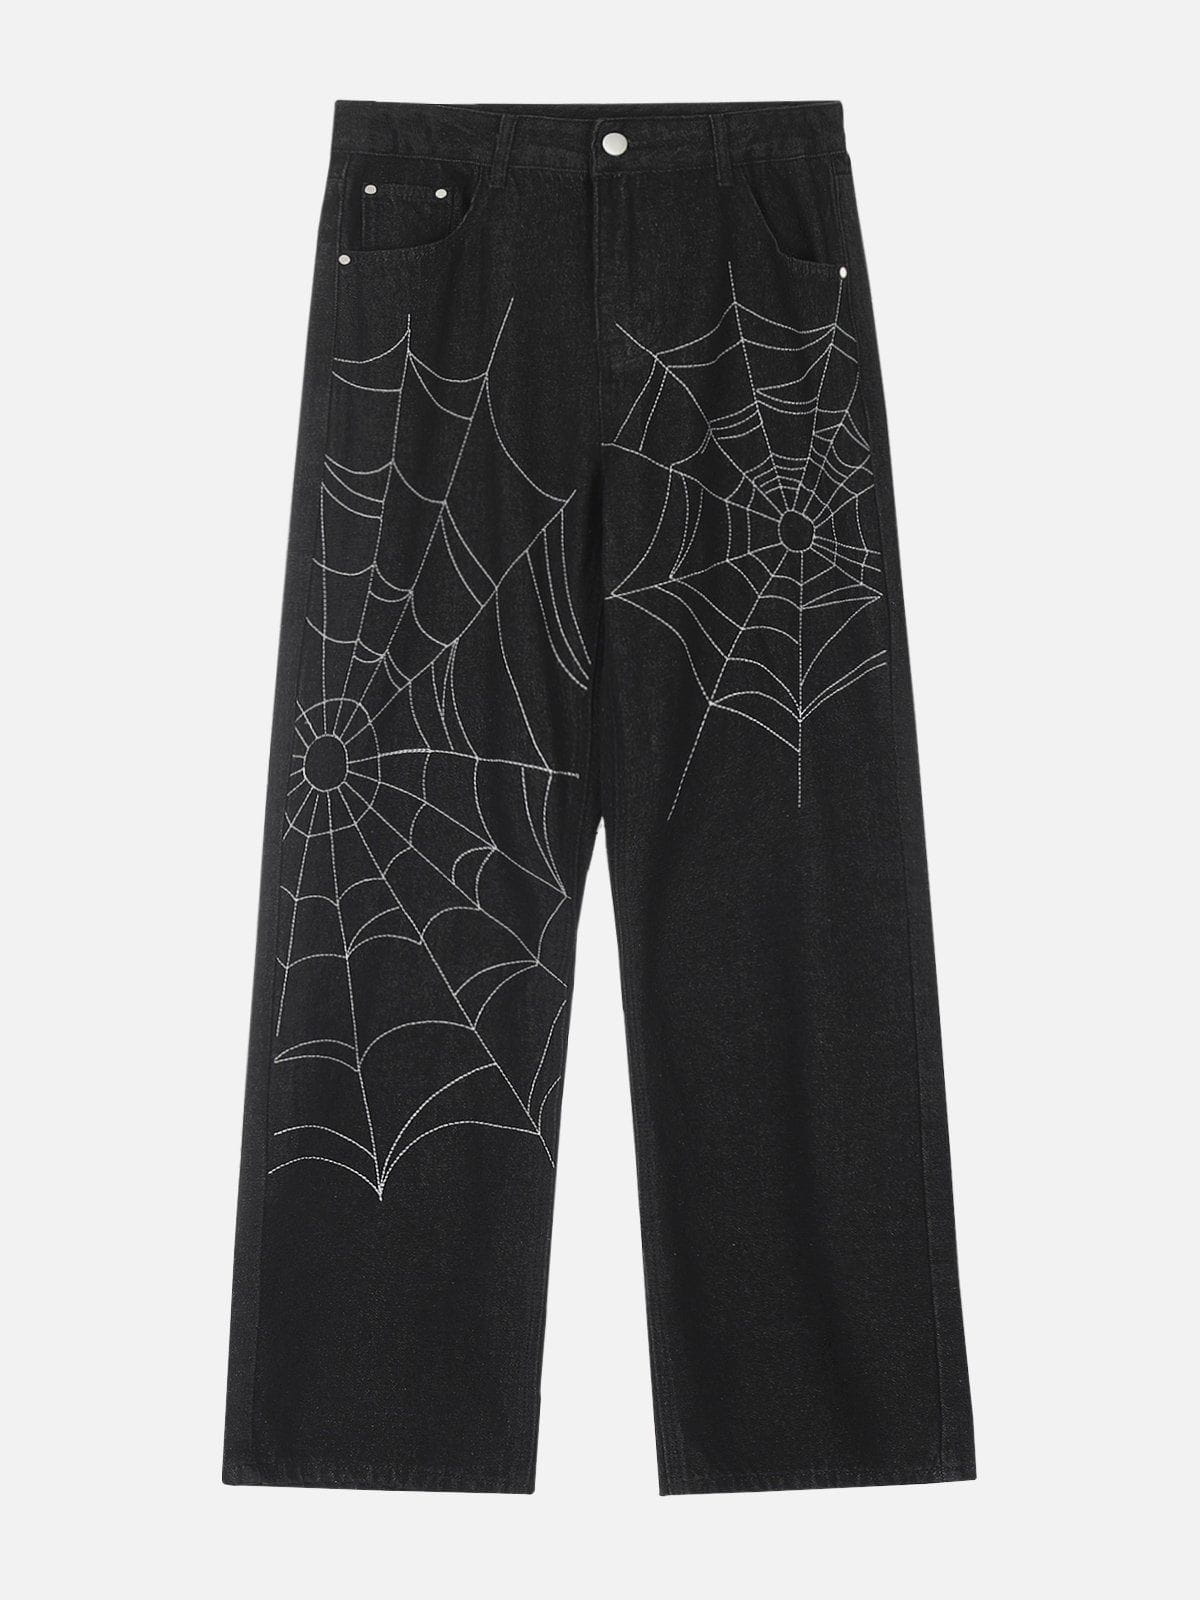 Aelfric Eden Spider Web Straight-Leg Jeans